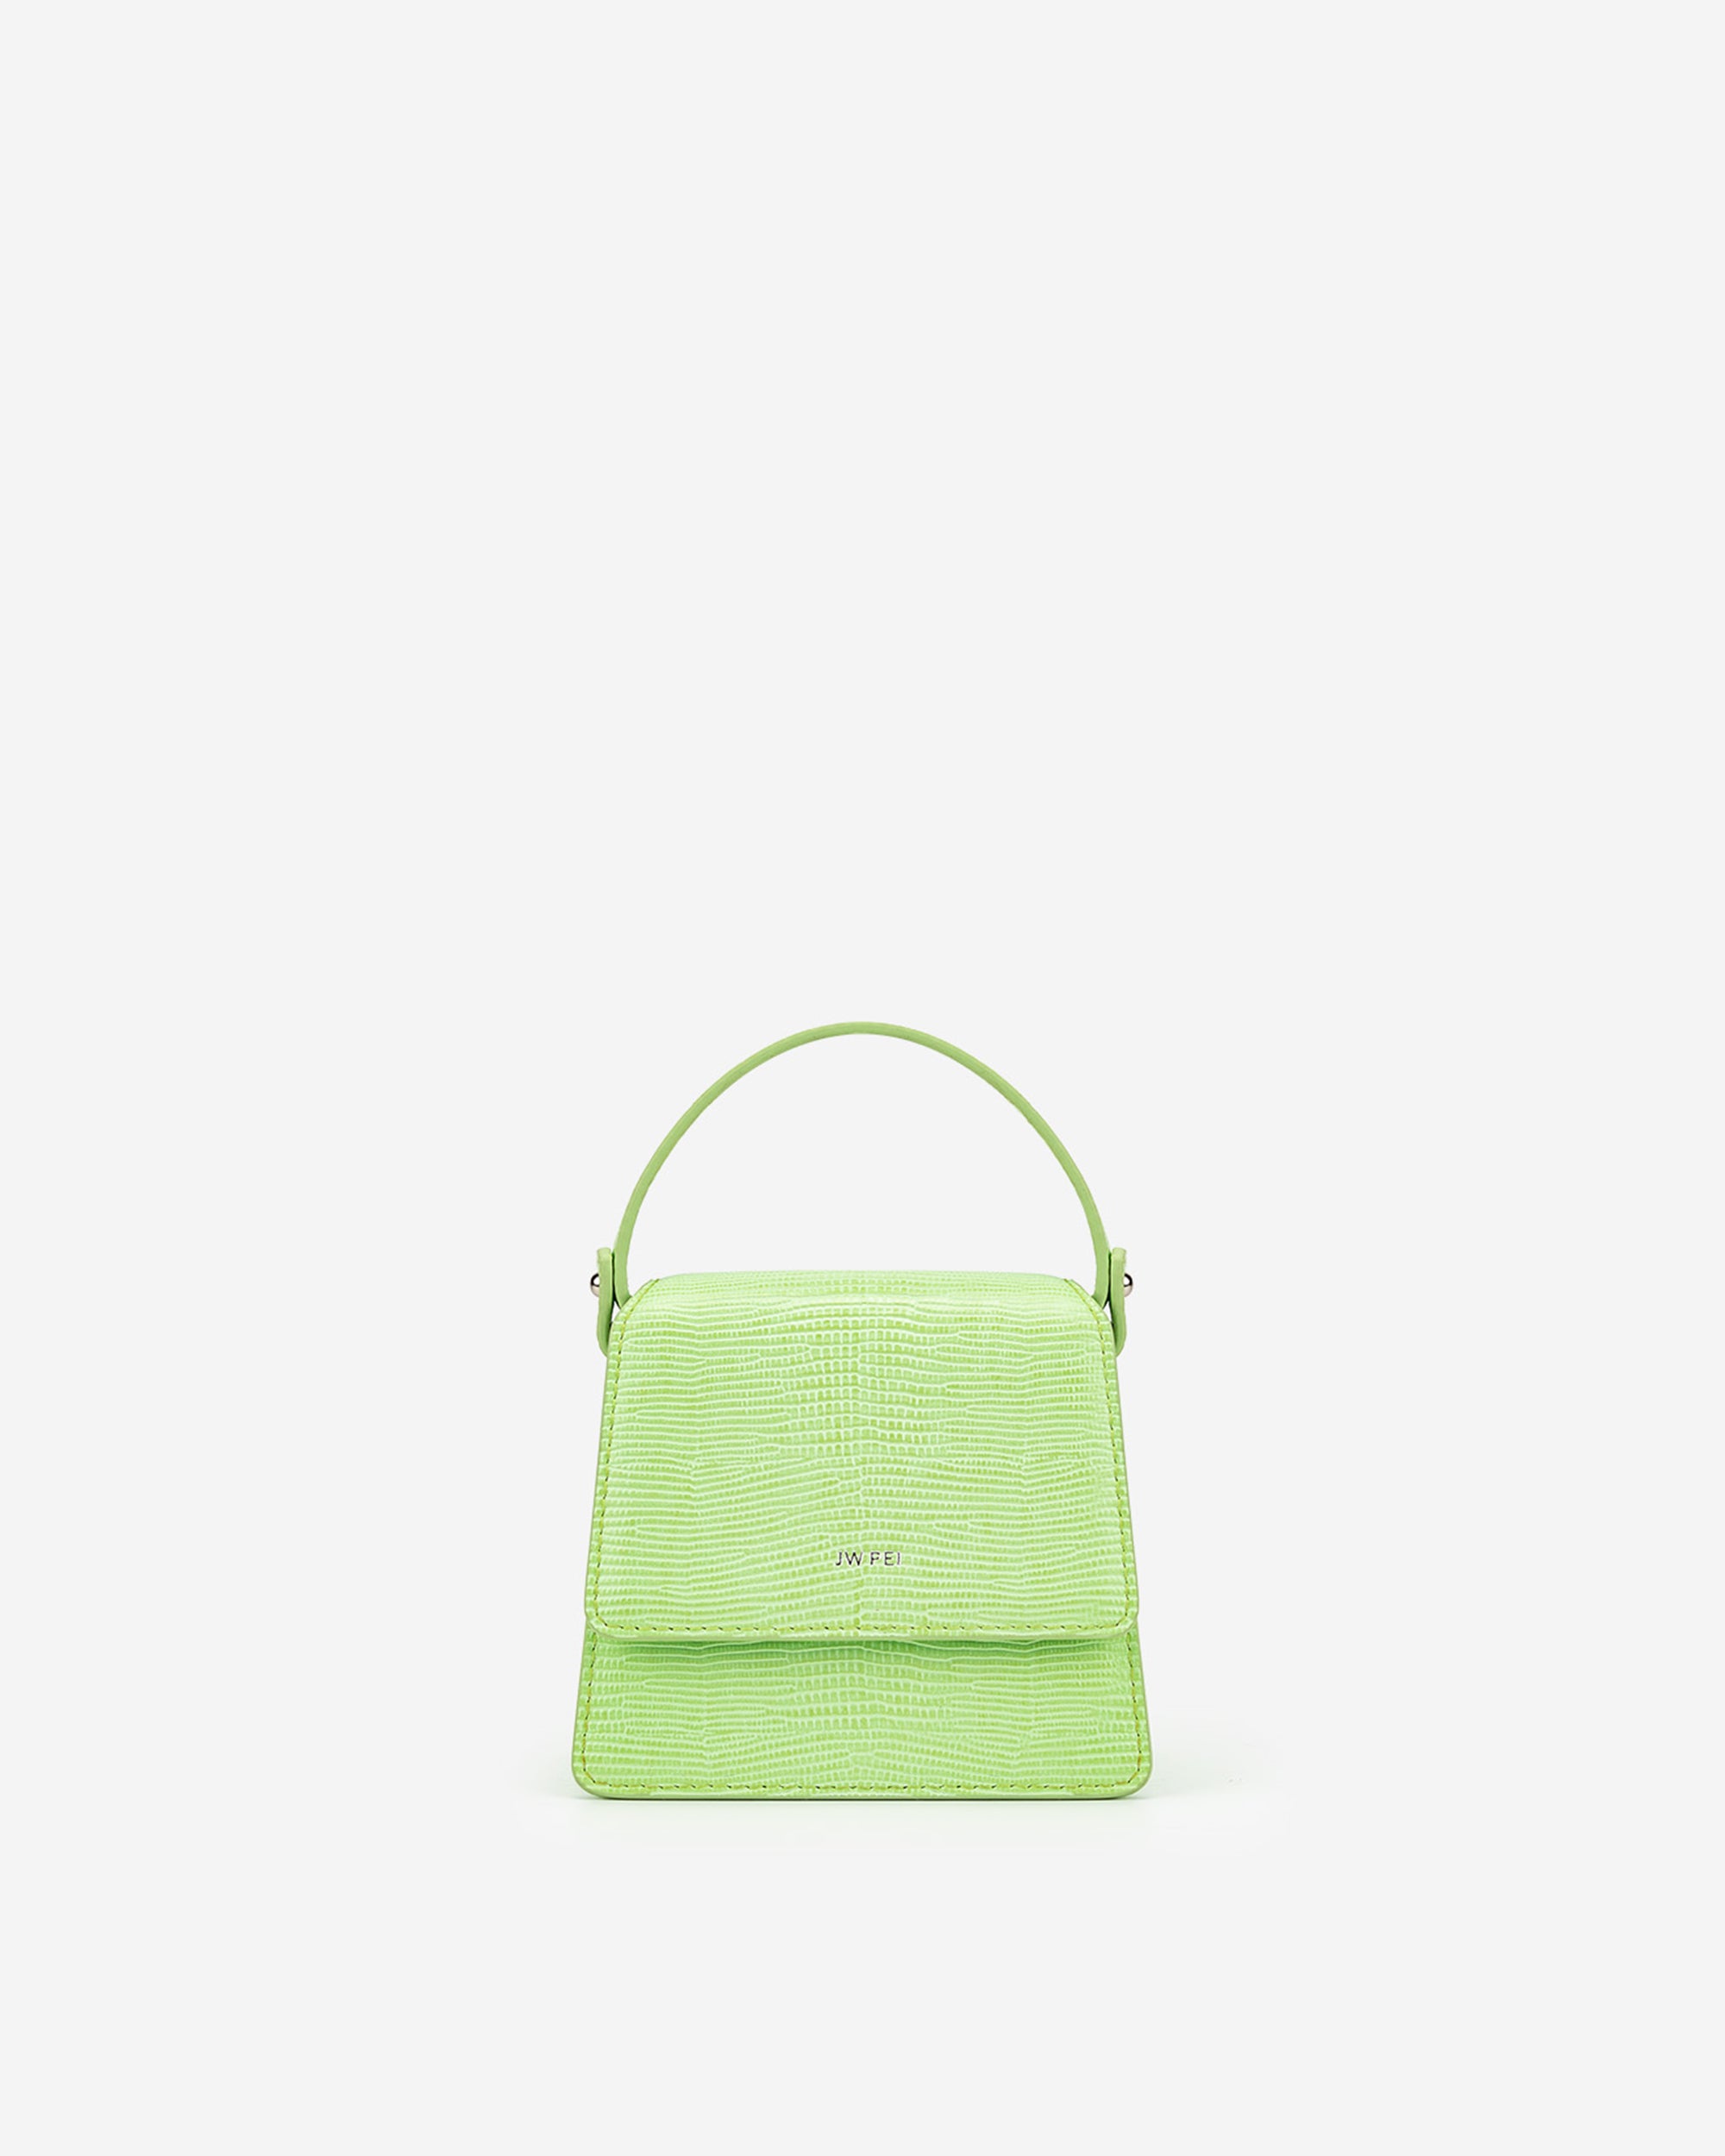 Fae 迷你手提包 - 檸檬綠色蜥蜴紋